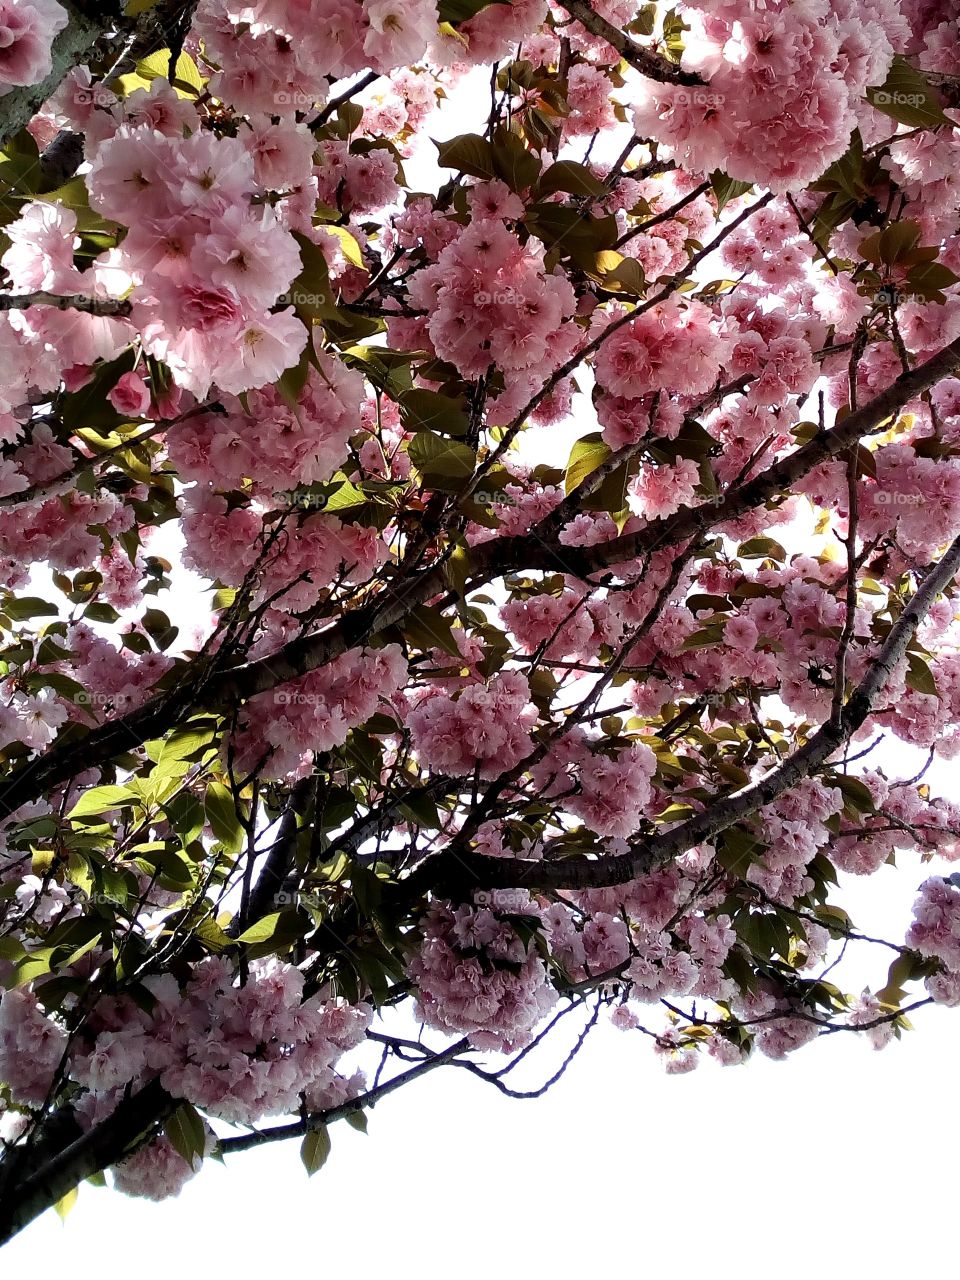 Cherry blossoms in Japan, yaezakura variety.